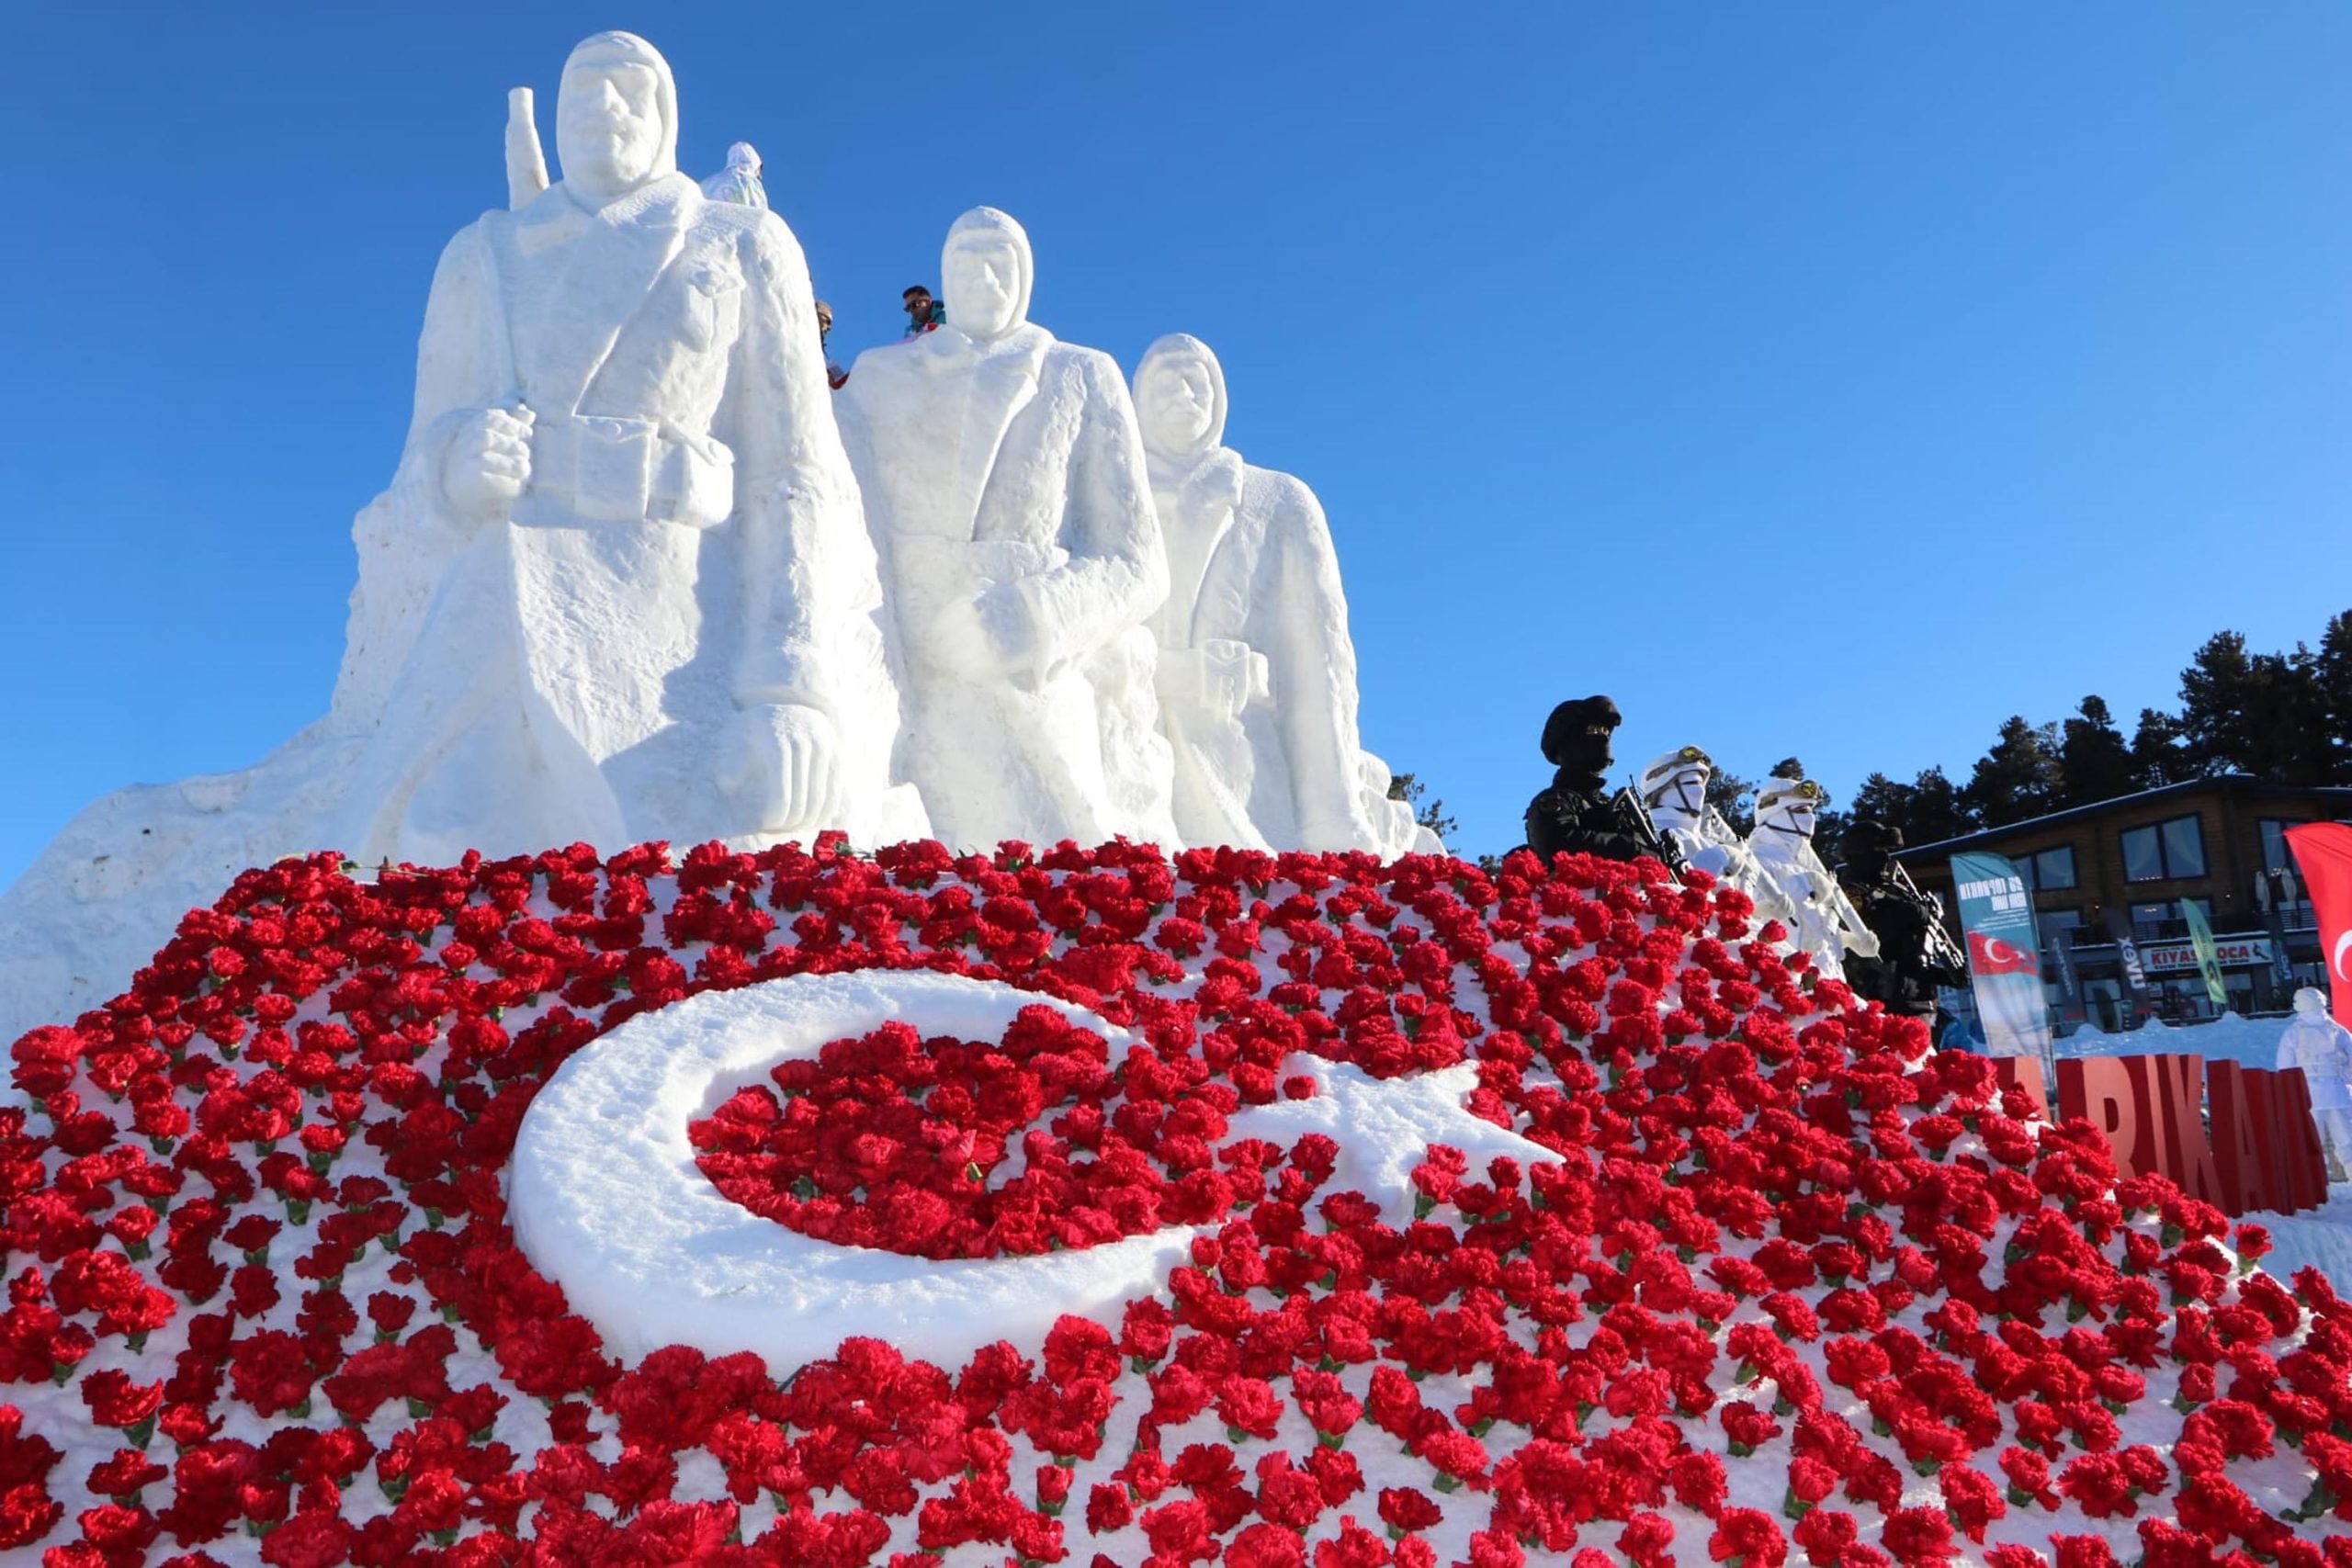 Sarıkamış'ta yapılan 'Karı yorgan edenler' temalı kardan heykellerin açılışı gerçekleştirildi